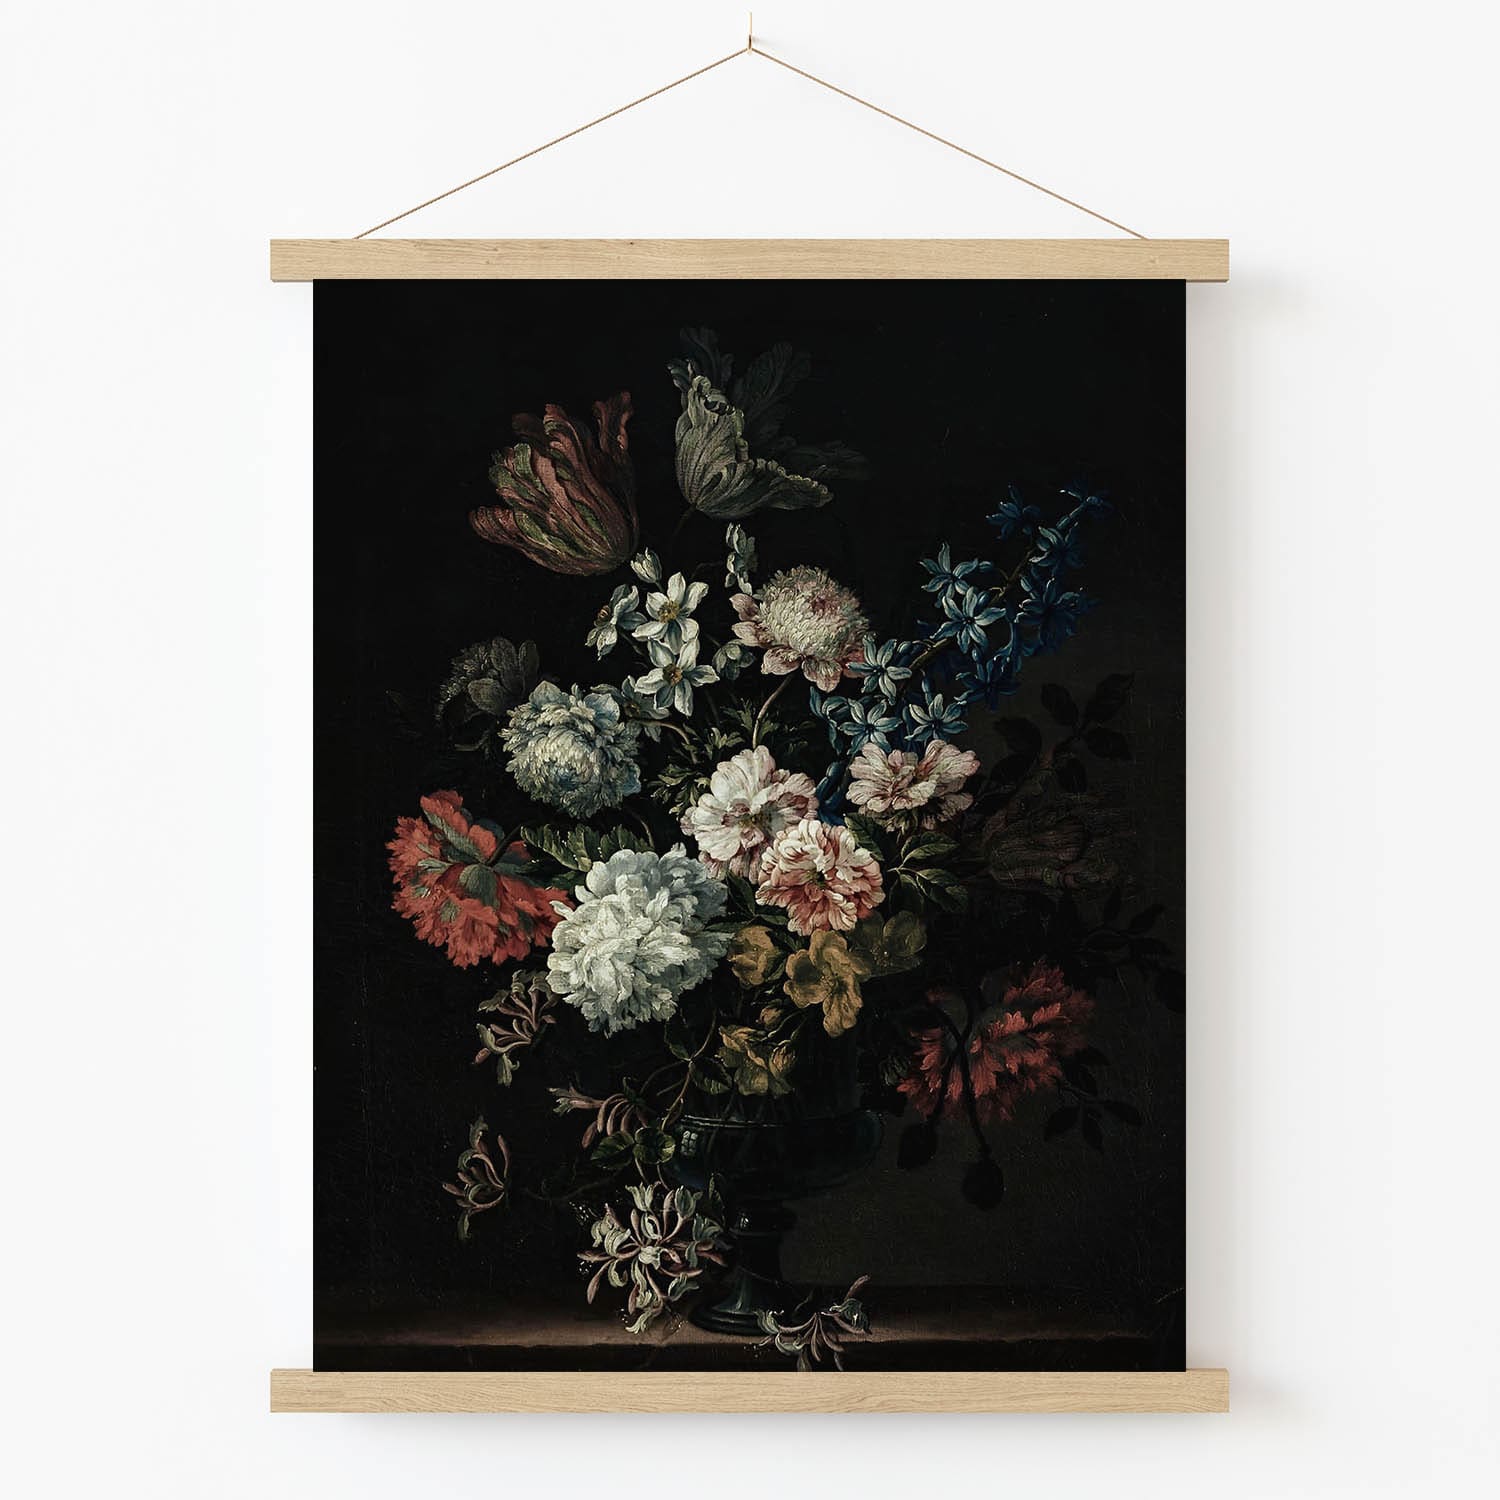 Dark Still Life Flower Art Print in Wood Hanger Frame on Wall